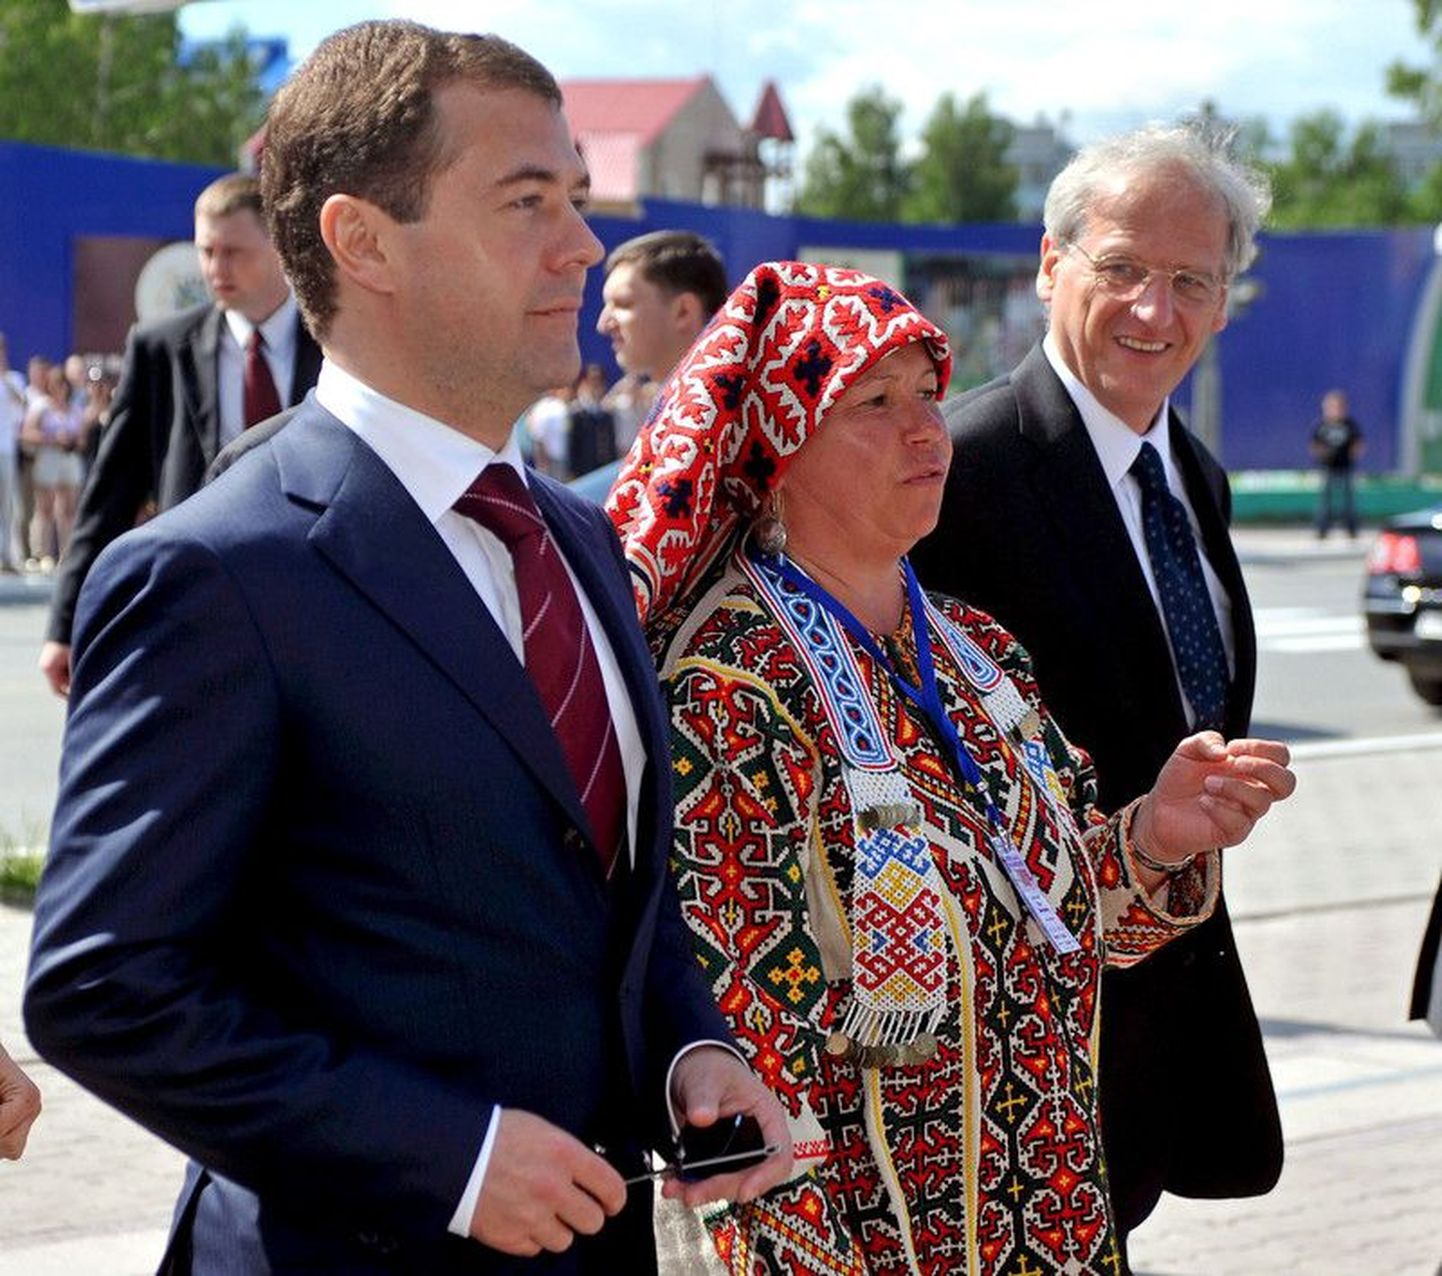 Venemaa tollane president Dmitri Medvedev ja Ungari president László Sólyom kõnnivad koos rahvariides naisega soome-ugri rahvaste maailmapäeval Siberis.